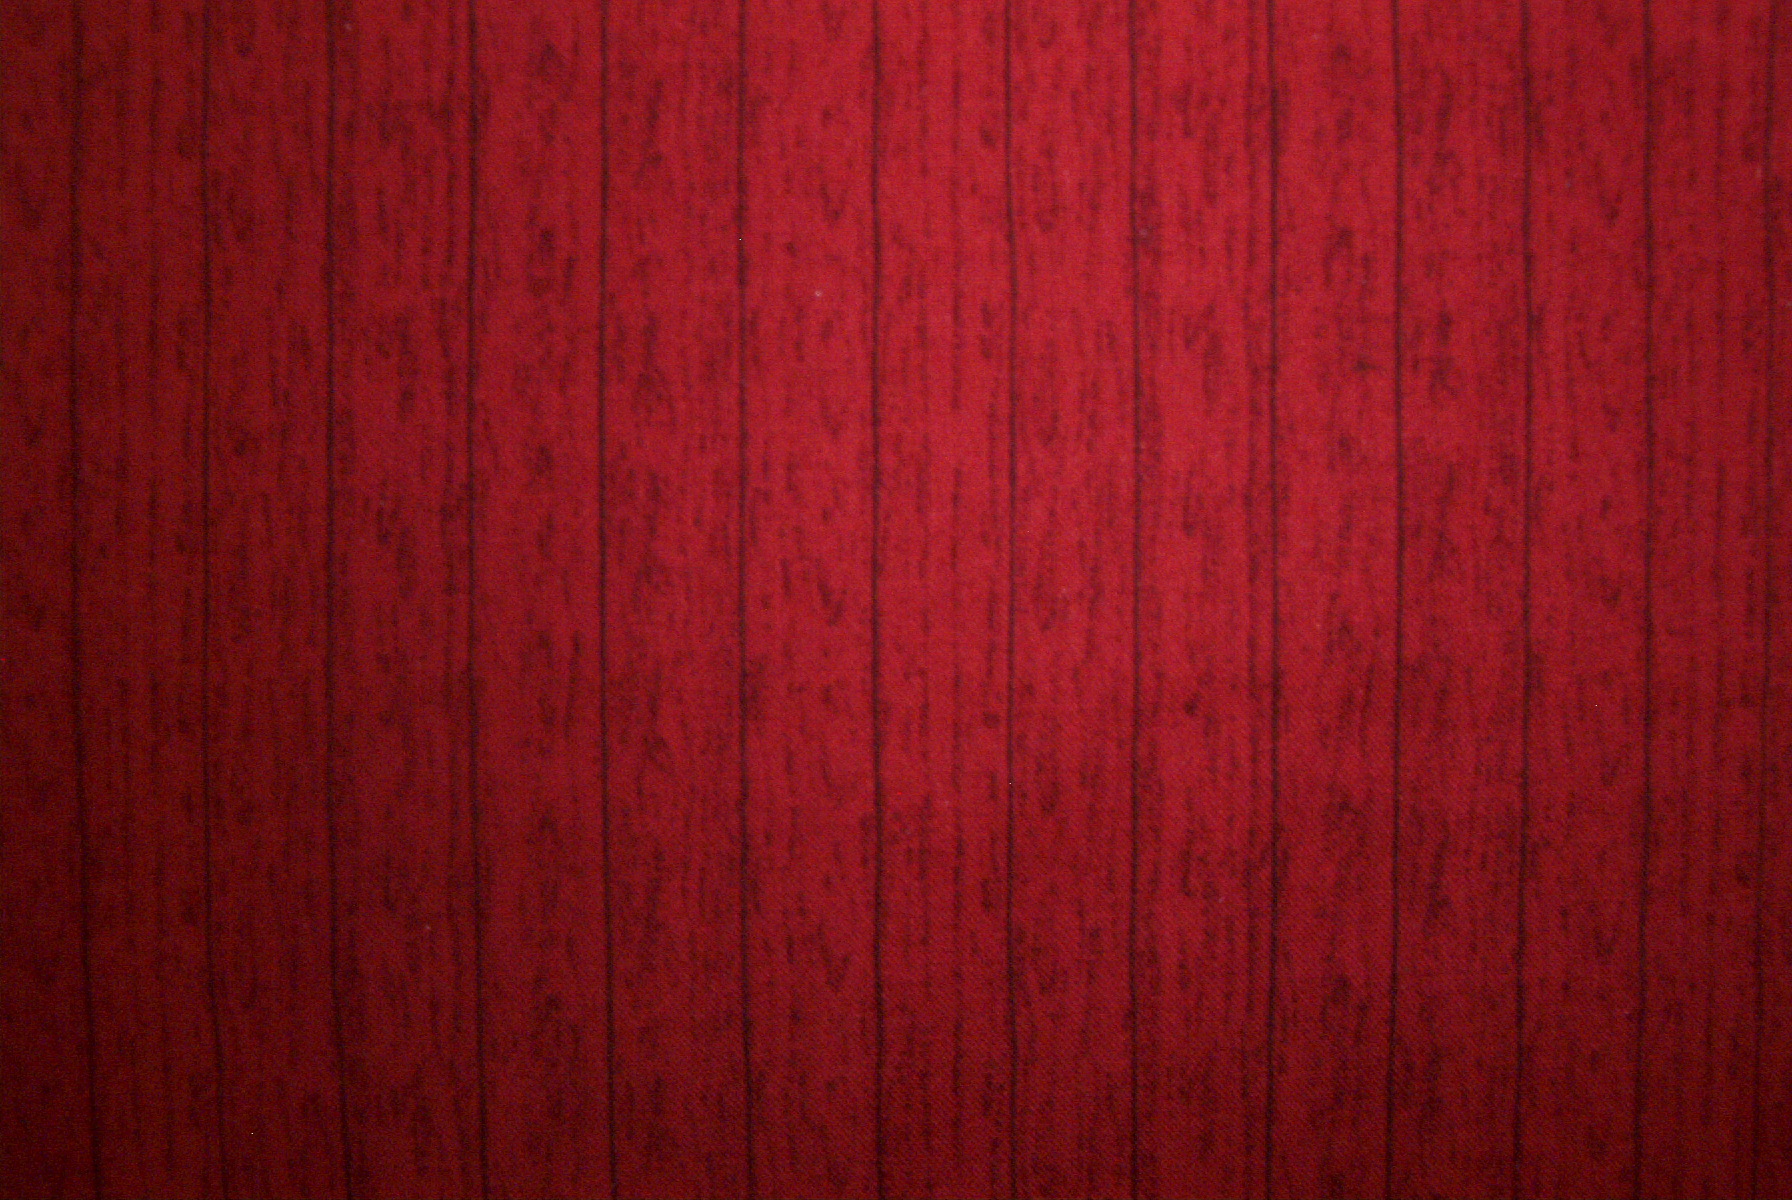 Gỗ đỏ vàng cũ: Hình ảnh những tấm ván gỗ đỏ vàng cũ tuyệt đẹp, tạo thành một mảng tường trang trí độc đáo, nhẹ nhàng, tinh tế. Với ánh sáng vàng ấm áp, tạo nét và hiệu ứng đẹp mắt, cùng với điểm nhấn đậm chất trang trí.